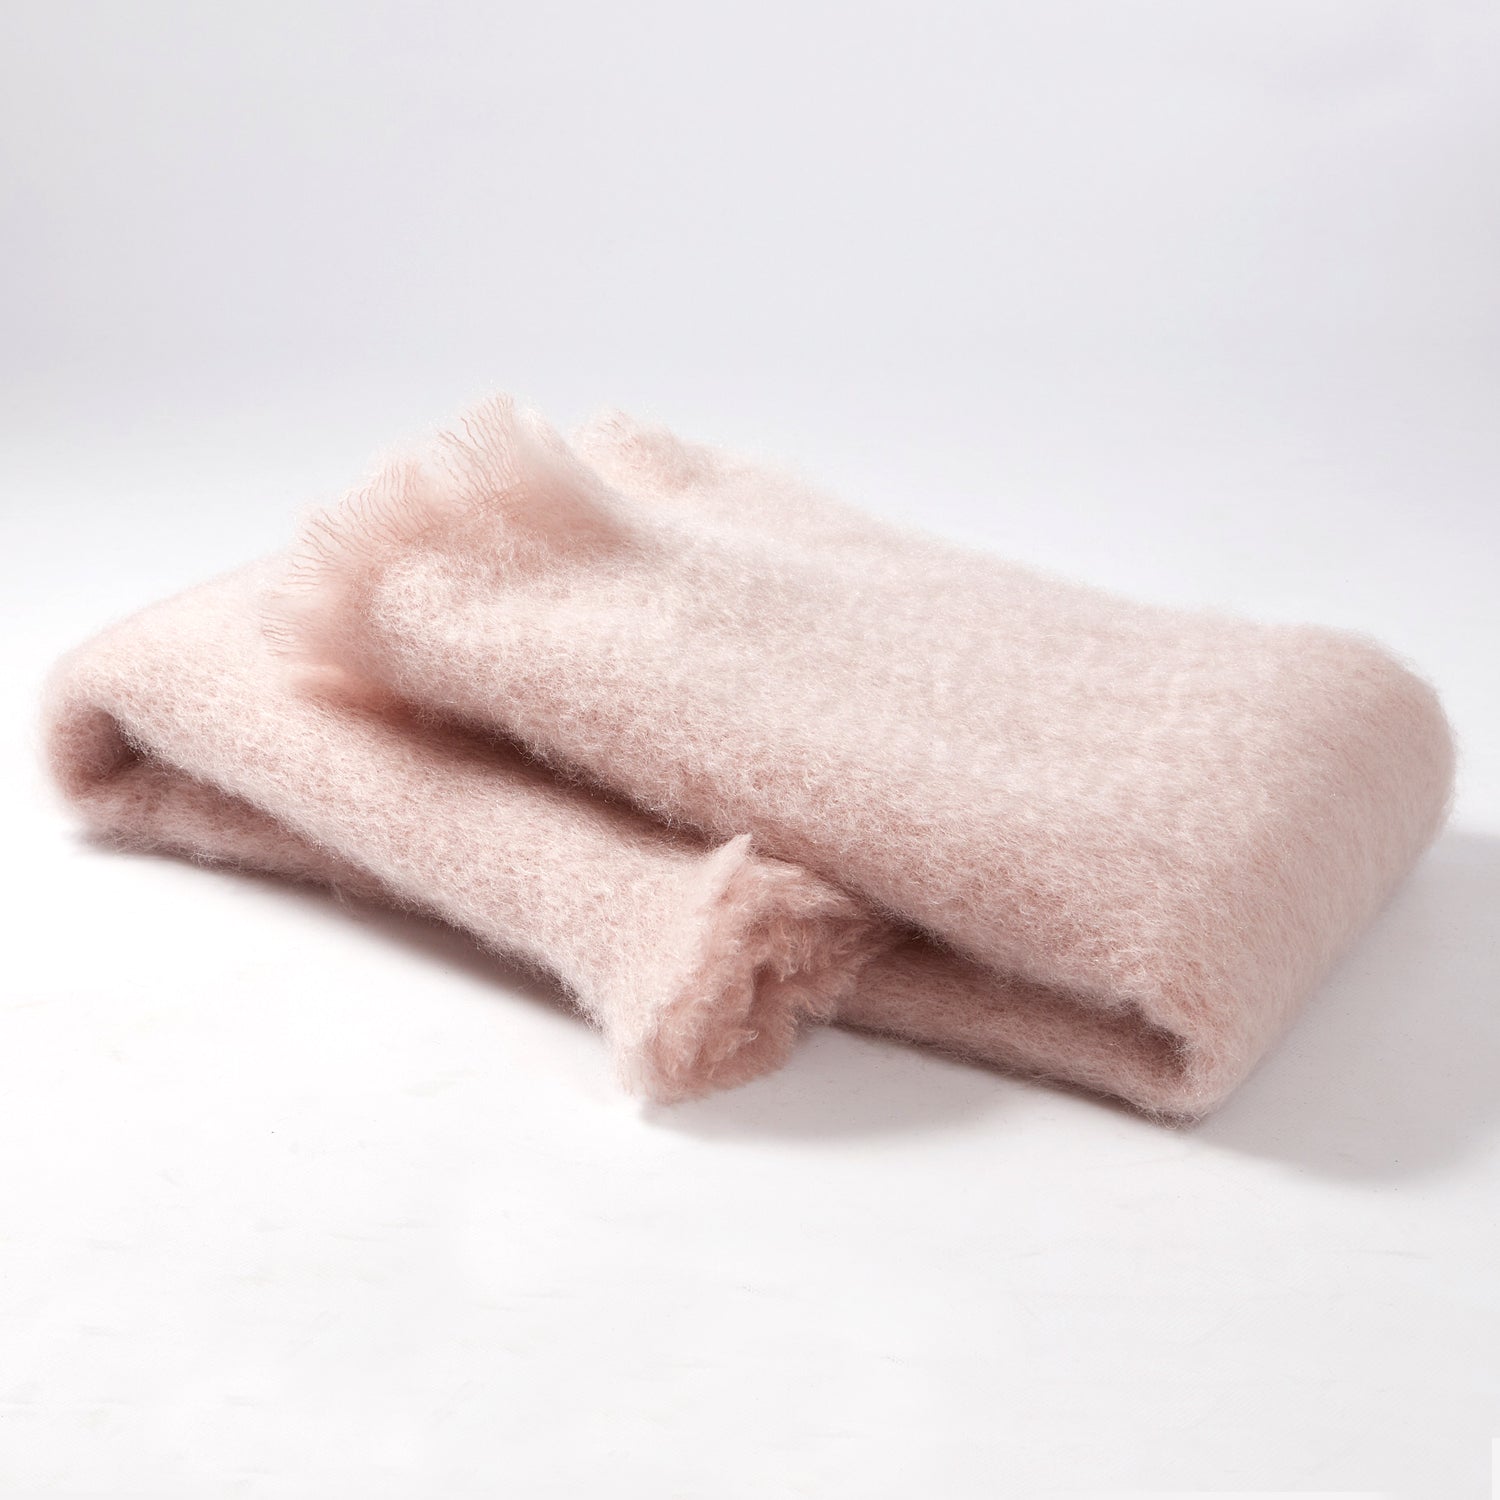 Mantas Ezcaray Lisos Powder Pink Mohai Throw - 130 x 200cm